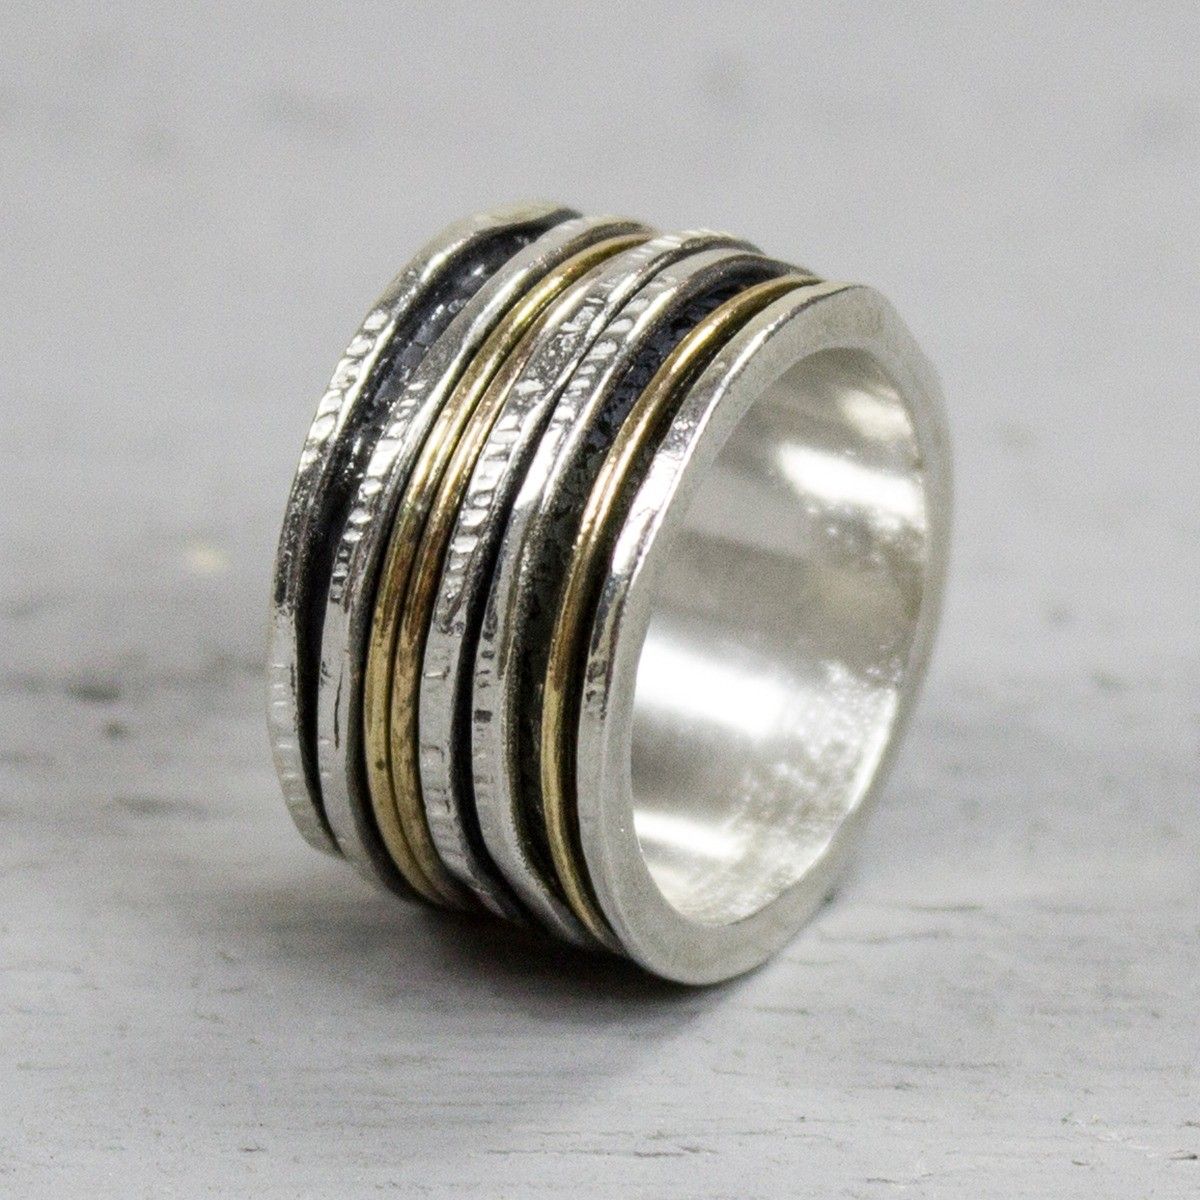 Jewels ring zilver geoxideerd met ringen – Mignon Juwelier & Goudsmeden